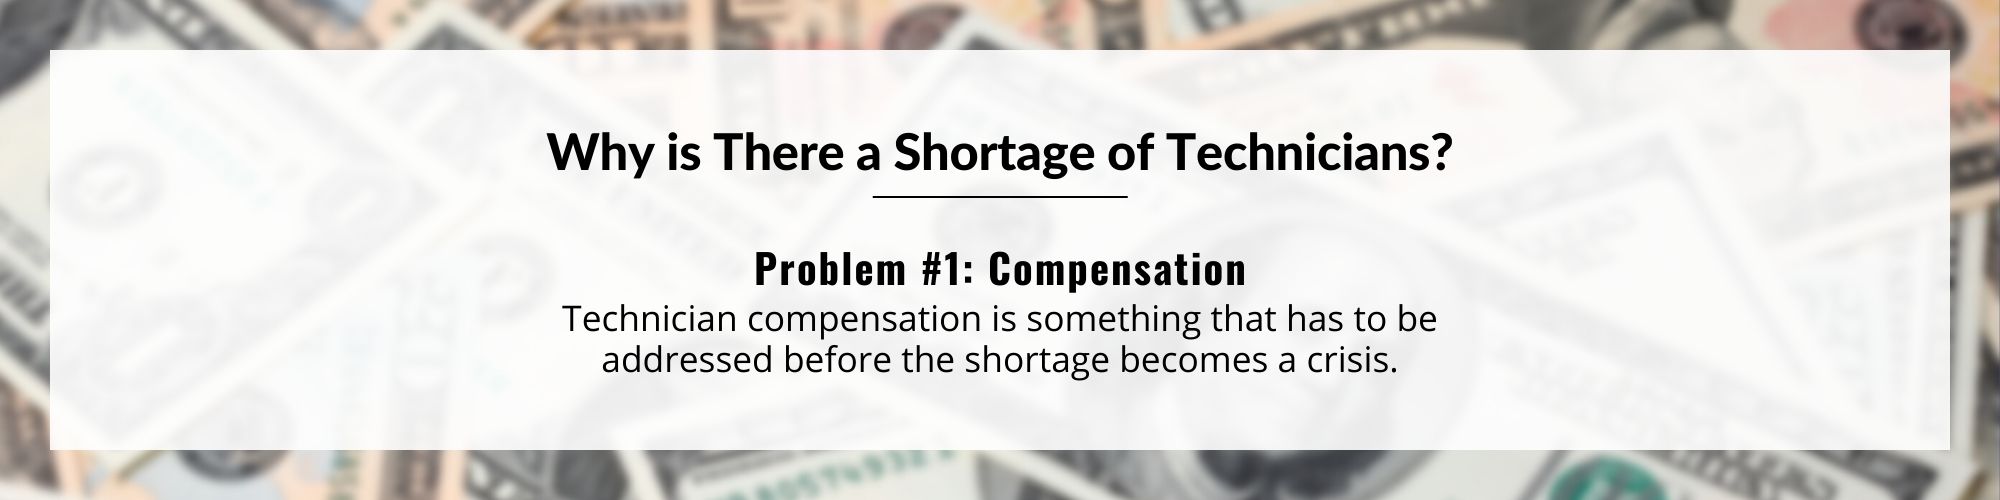 Problem #1: Compensation